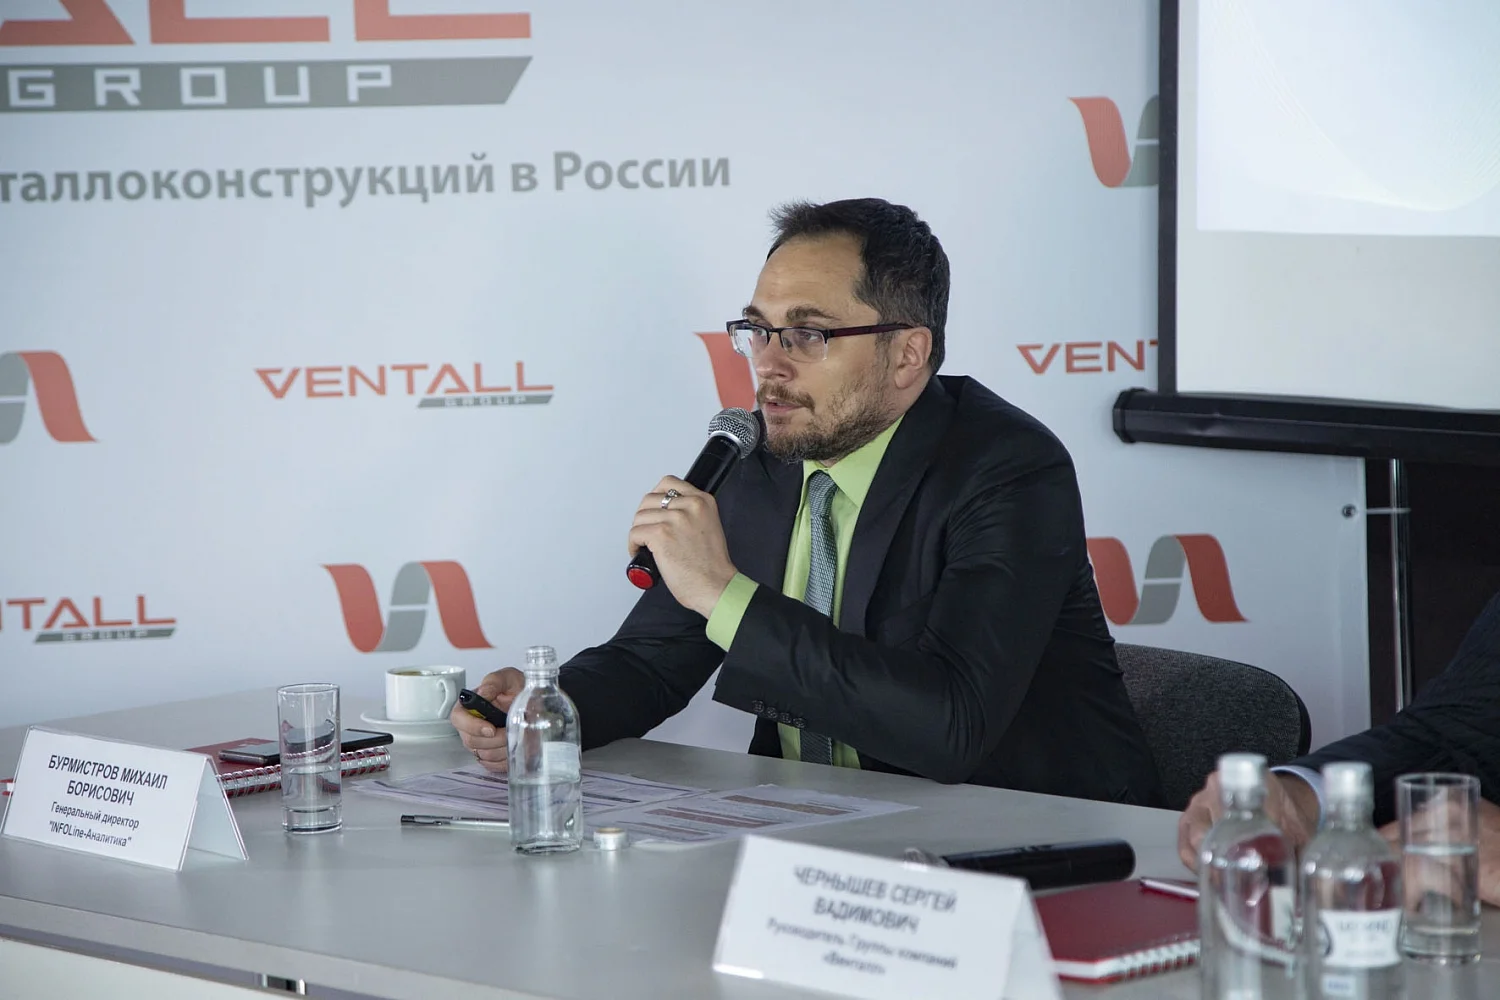 Более 120 000 тонн металлоконструкций в год: холдинг «Венталл» возглавил рейтинг крупнейших производителей России